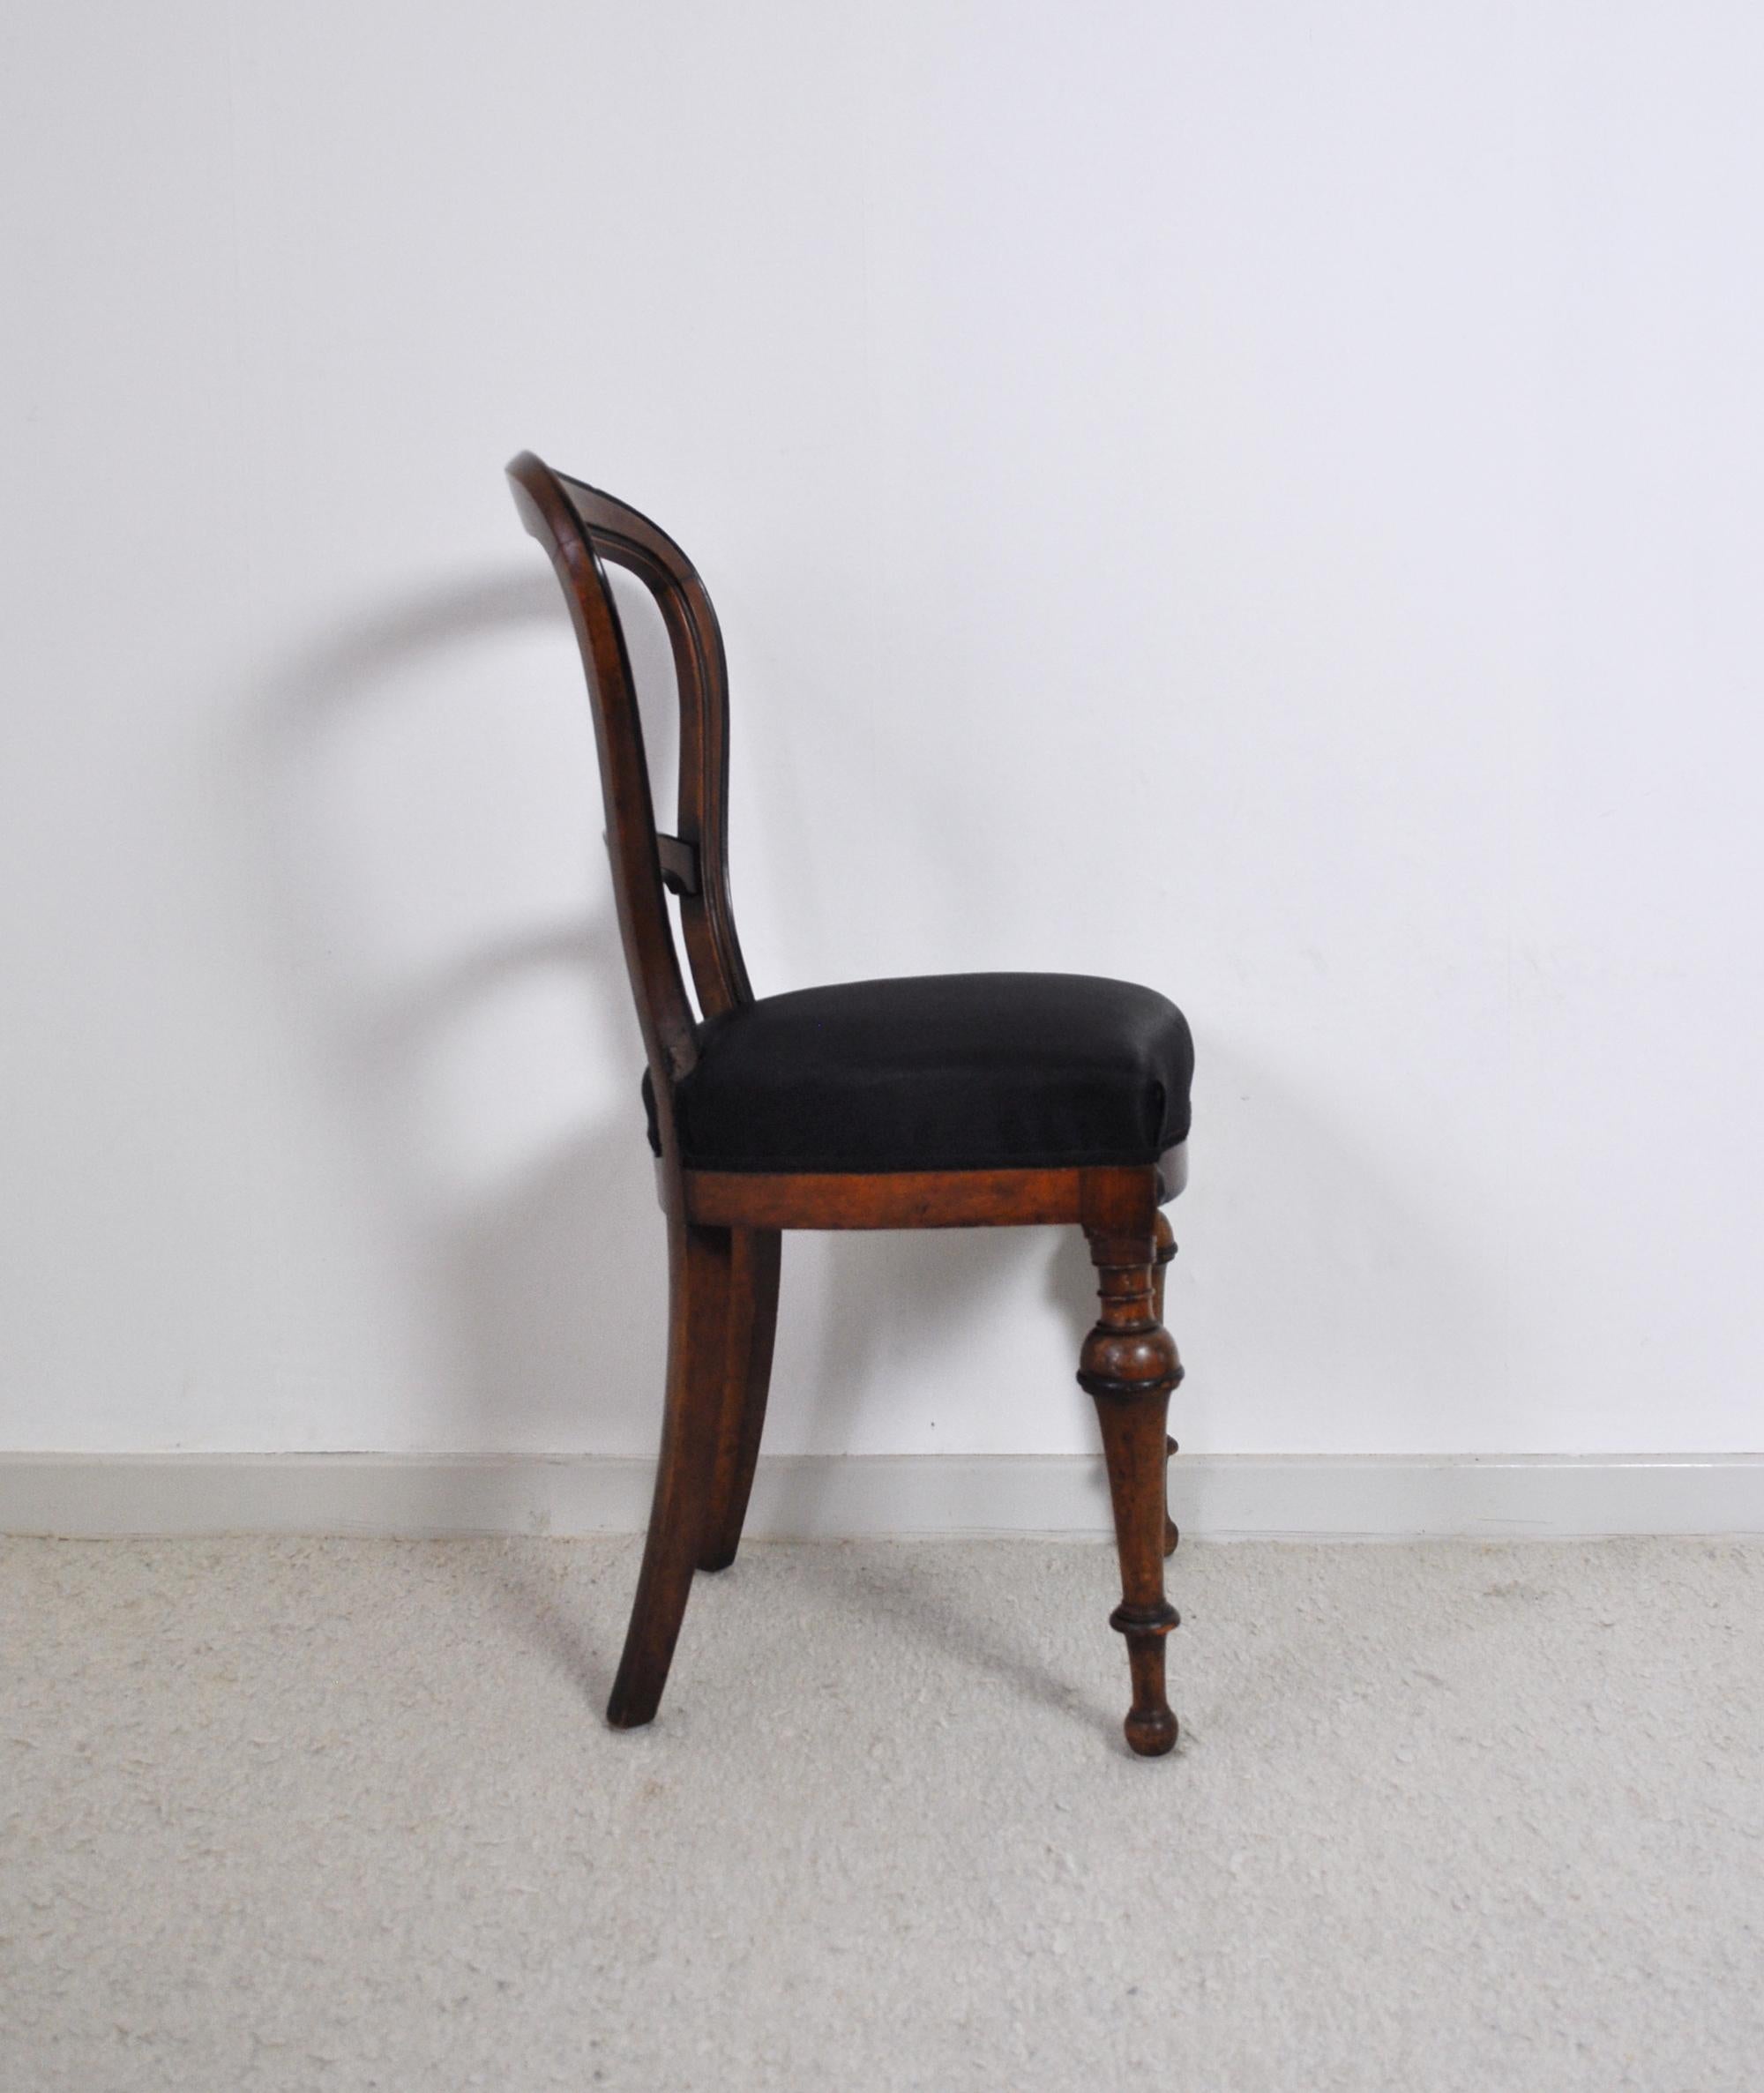 Danish 19th Century Victorian Mahogany Chair